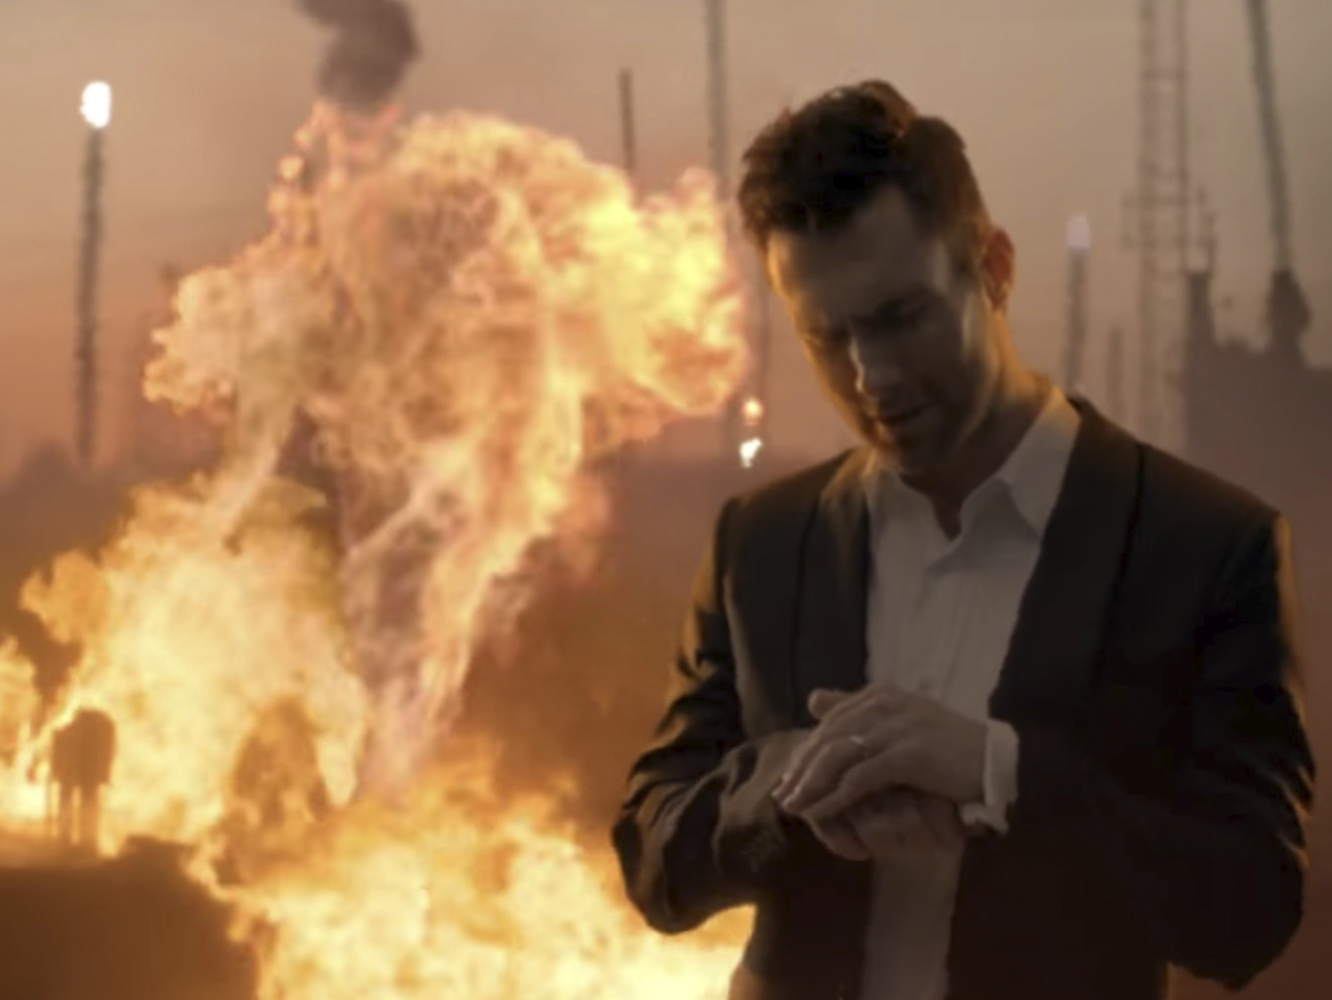  Adam Levine y la banda que tiene de atrezzo lanzan el vídeo de ‘Wait’, con bien de efectos especiales